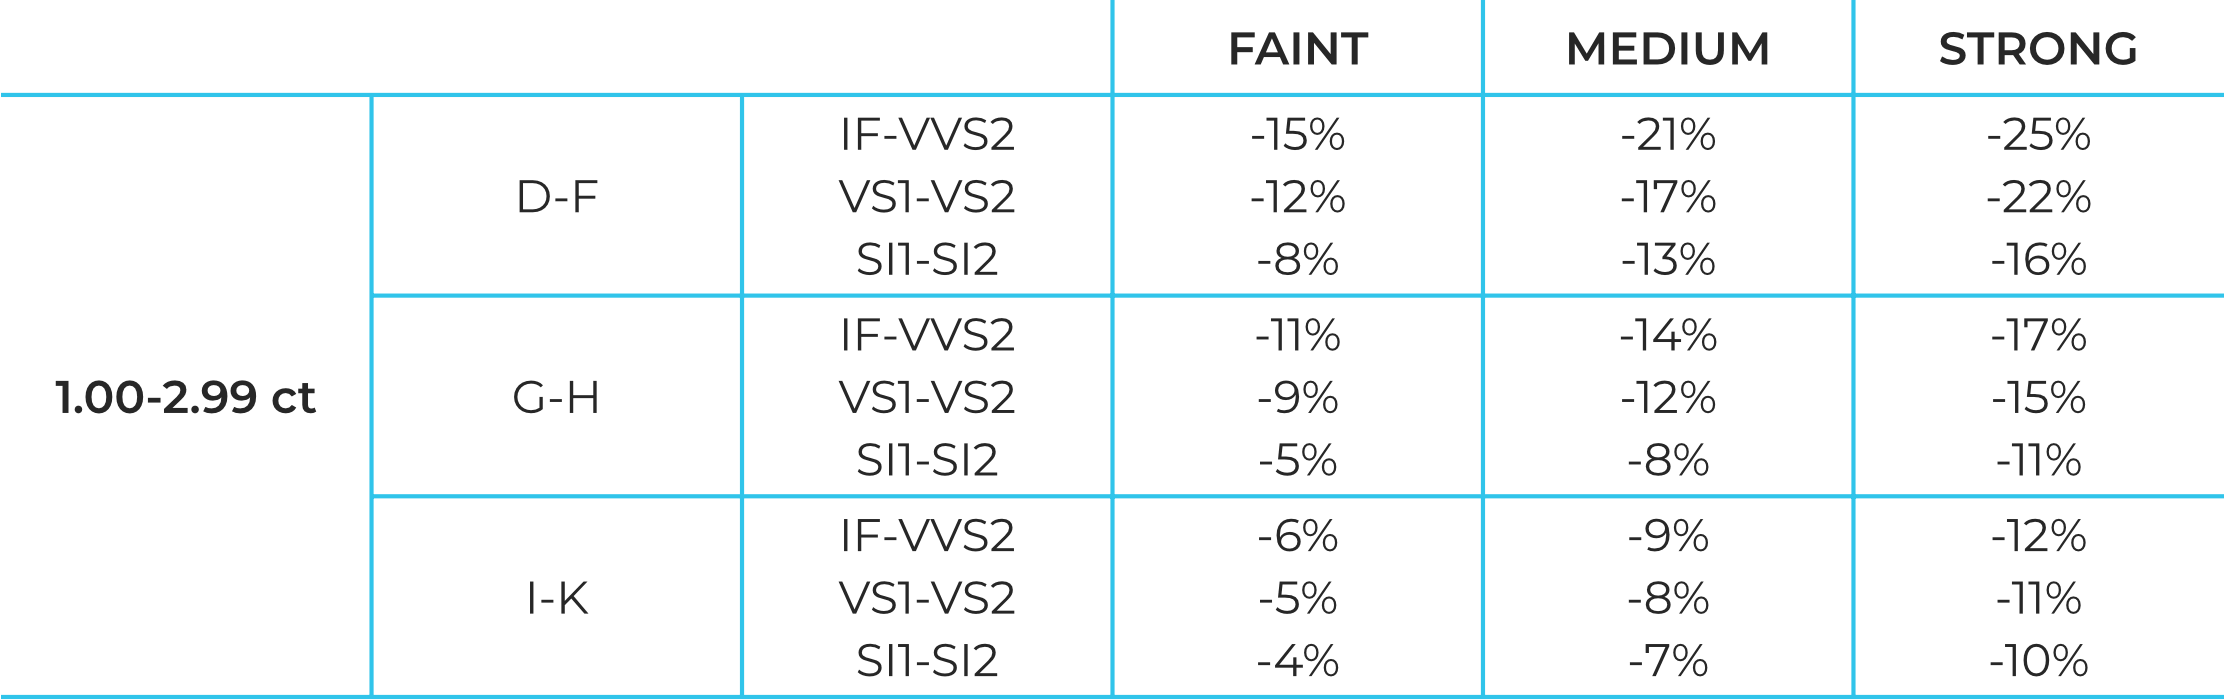 Tabela zmian procentowych cen diamentów fluorescencyjnych